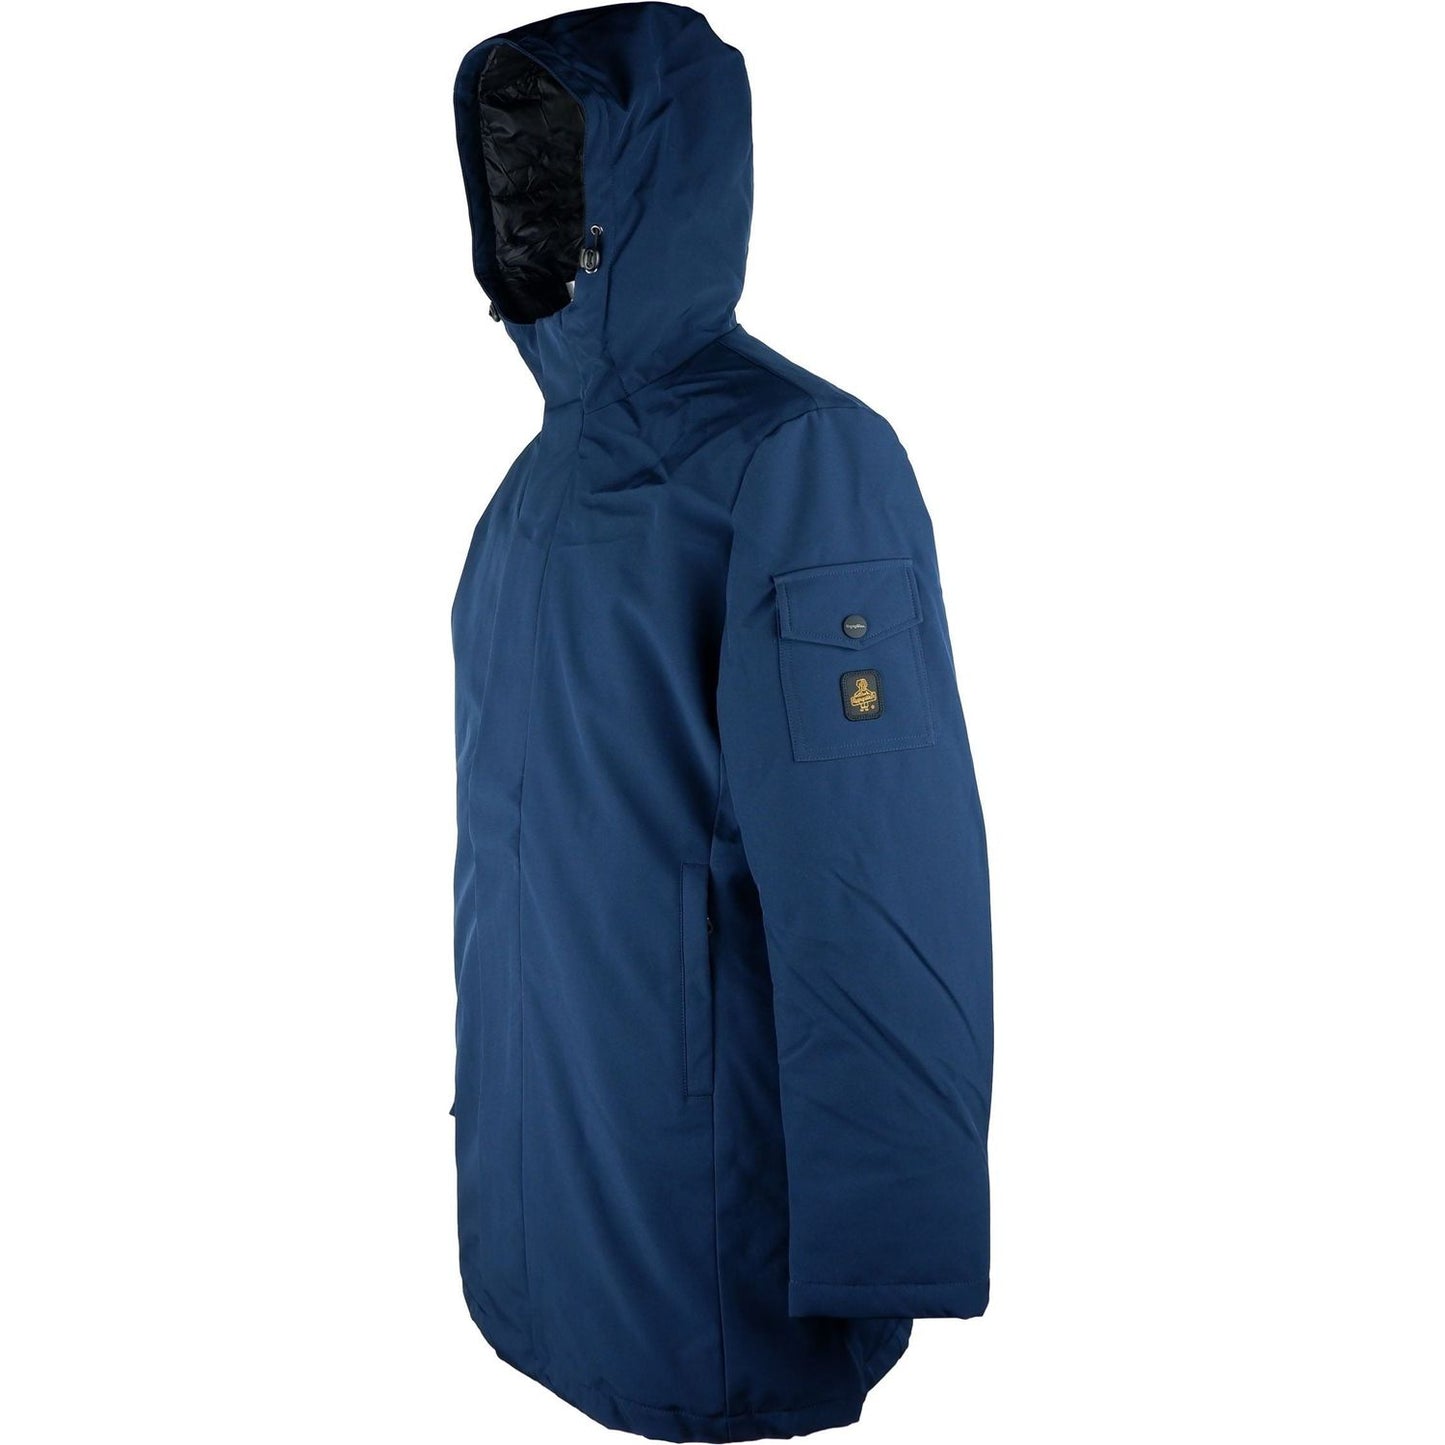 Refrigiwear Elegant Men's Long Jacket with Hood MAN COATS & JACKETS blue-polyester-jacket-3 stock_product_image_5264_1754542883-scaled-42e4b86c-654.jpg